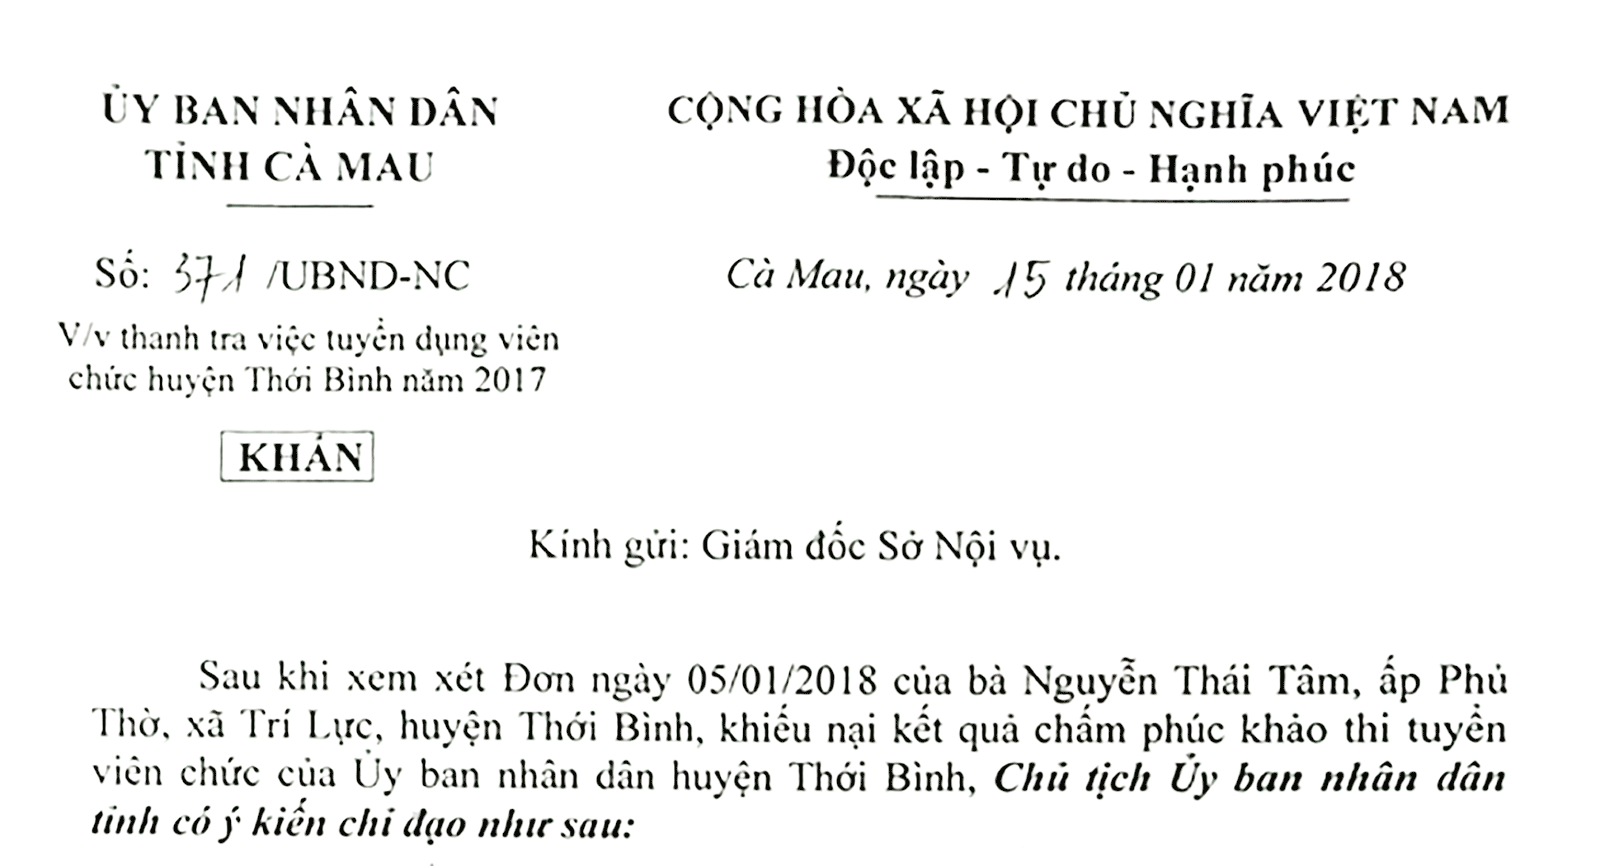 Công văn chỉ đạo của Chủ tịch UBND tỉnh Cà Mau